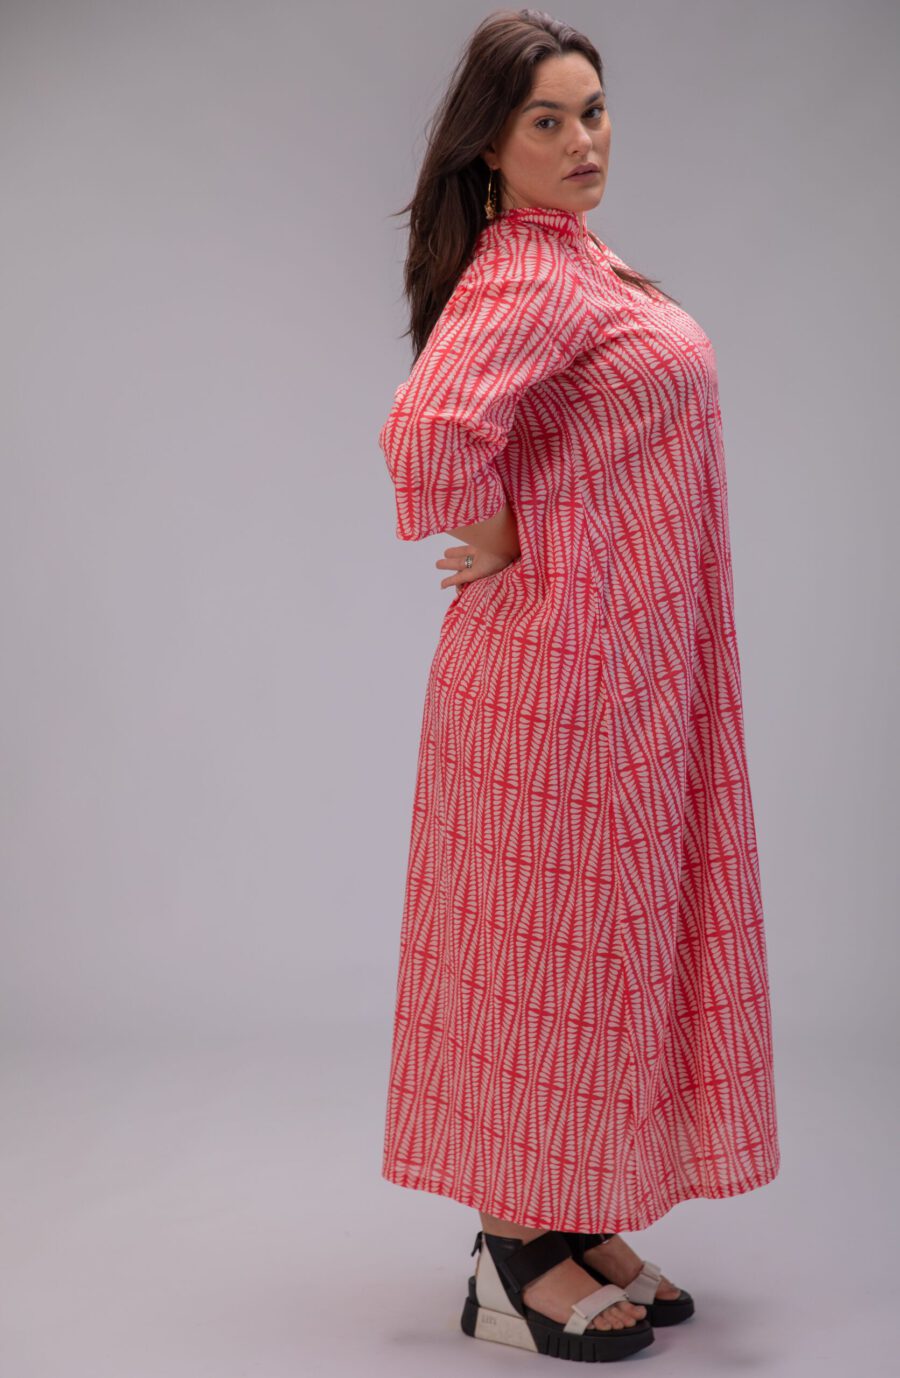 שמלת מאיקו | שמלה יפנית בעלת מפתח בעיצוב ייחודי - הדפס אגם אדום, שמלה אדומה עם הדפס גיאומטרי בצבע ורוד בהיר.